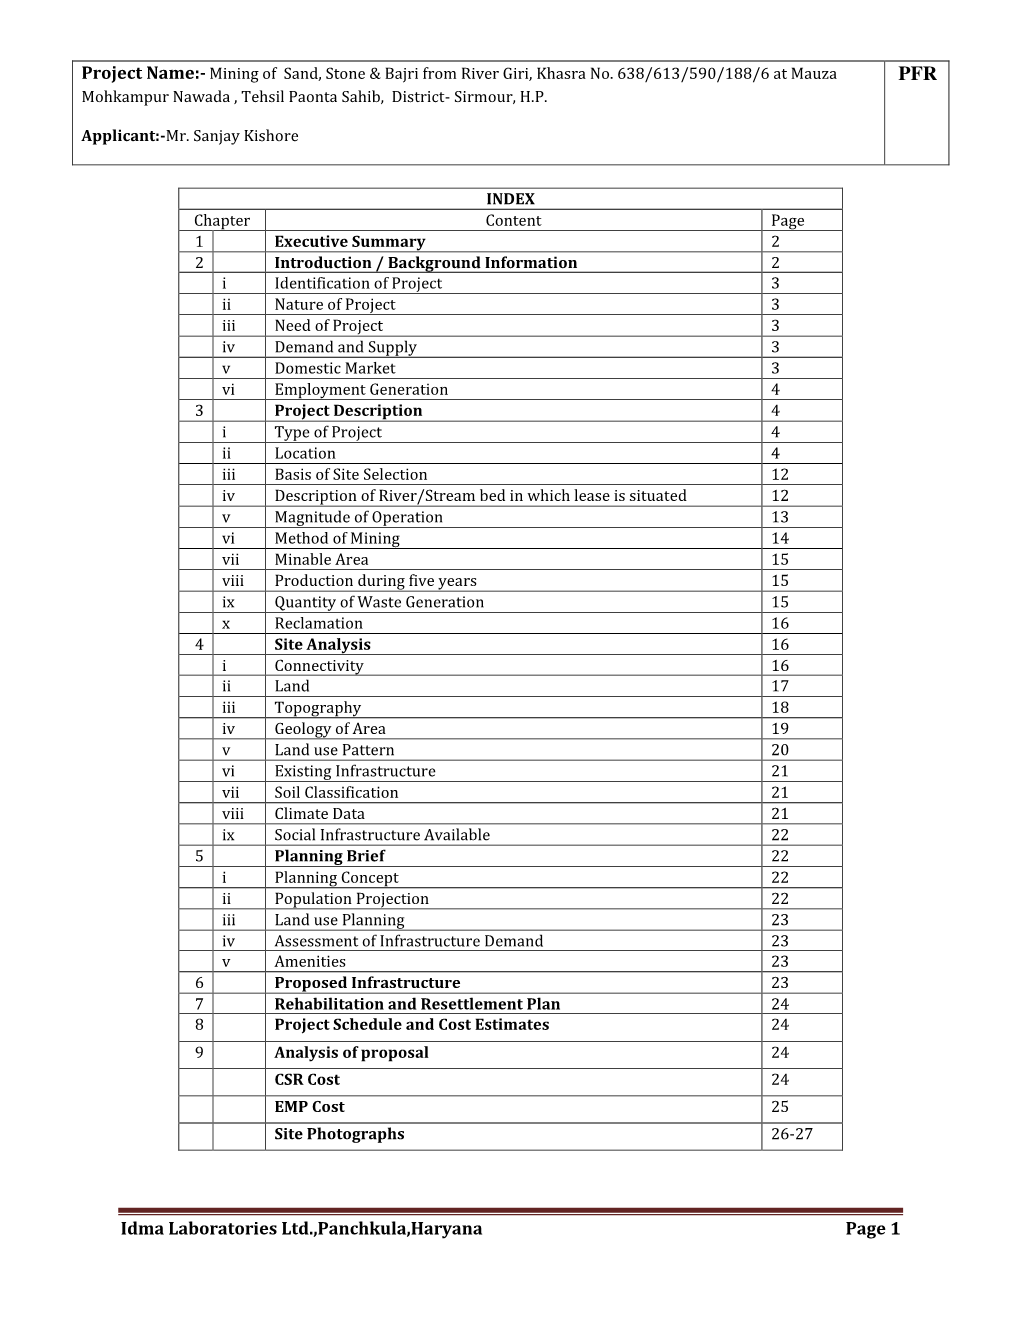 Idma Laboratories Ltd.,Panchkula,Haryana Page 1